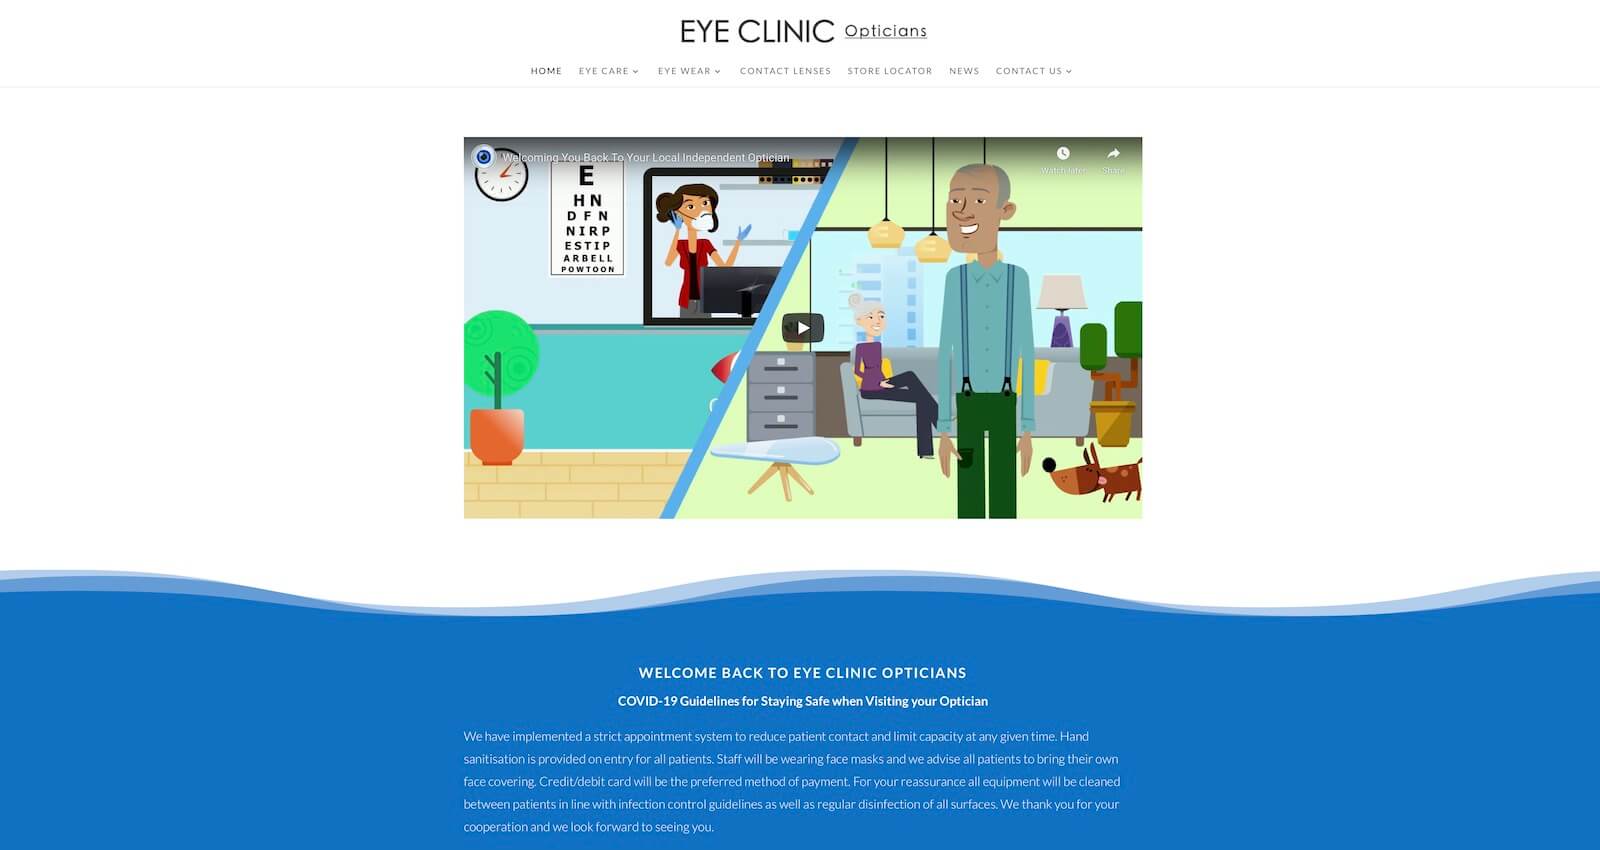 Eye Clinic Opticians Website Design